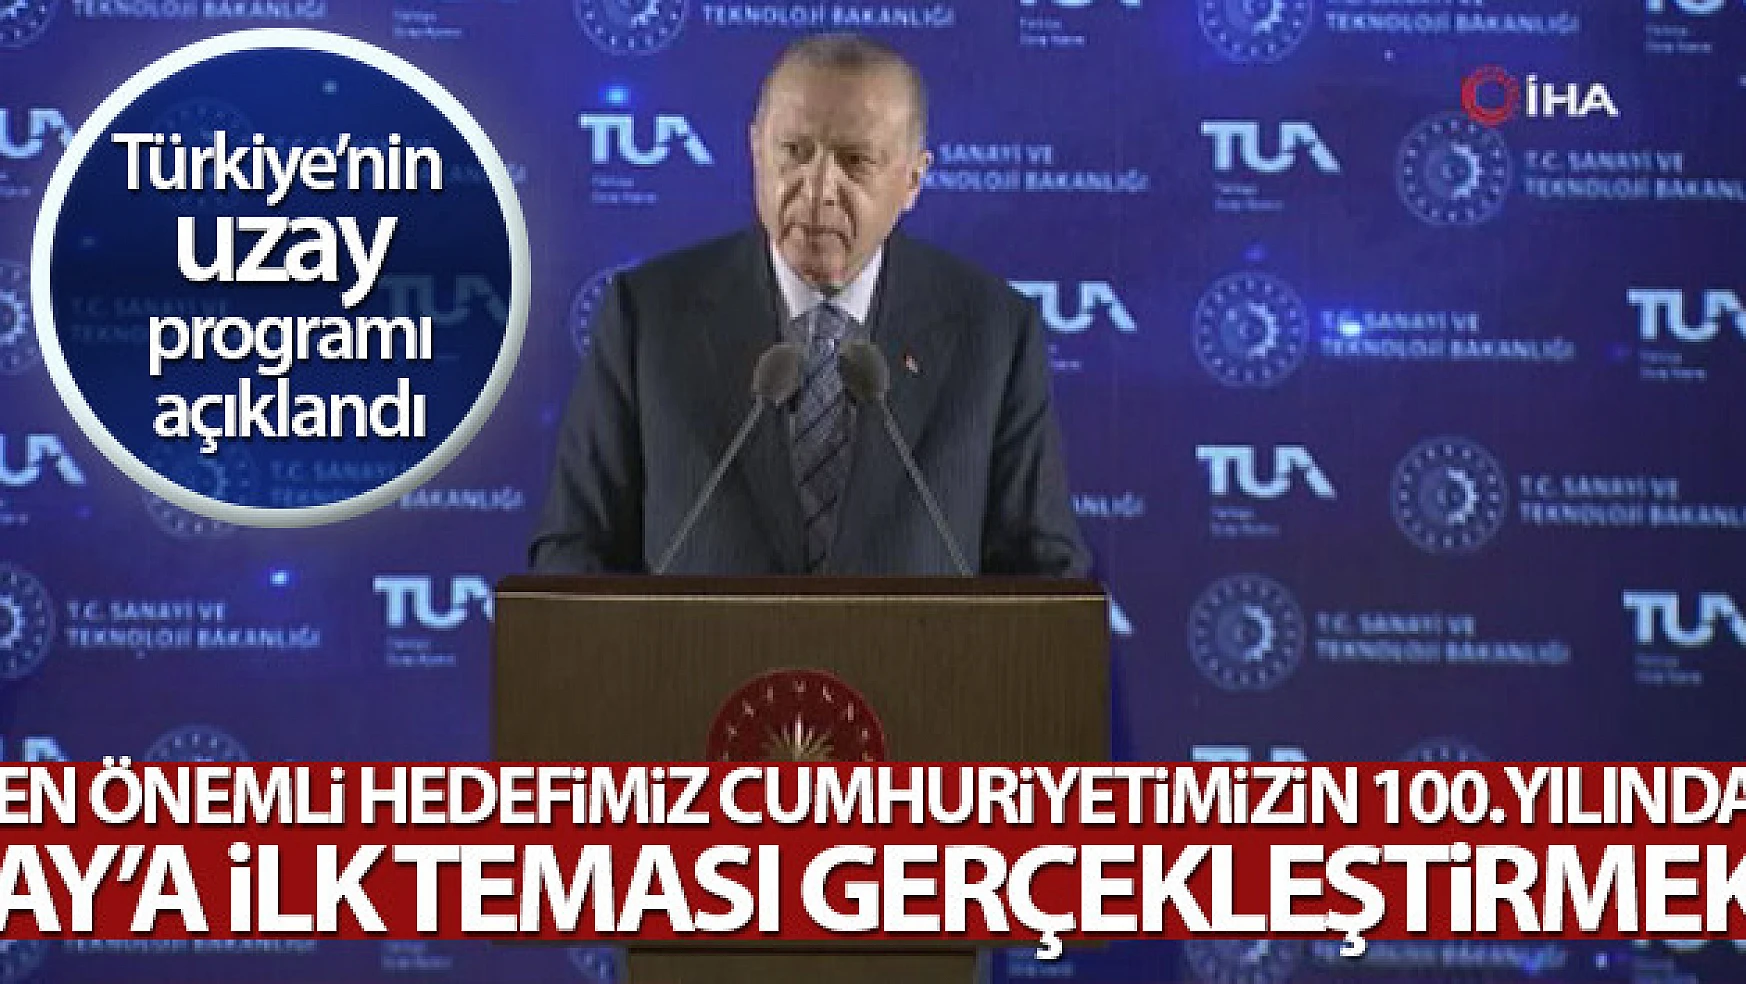 Cumhurbaşkanı Erdoğan, Türkiye'nin Milli Uzay Programı'nı dünyaya duyurdu